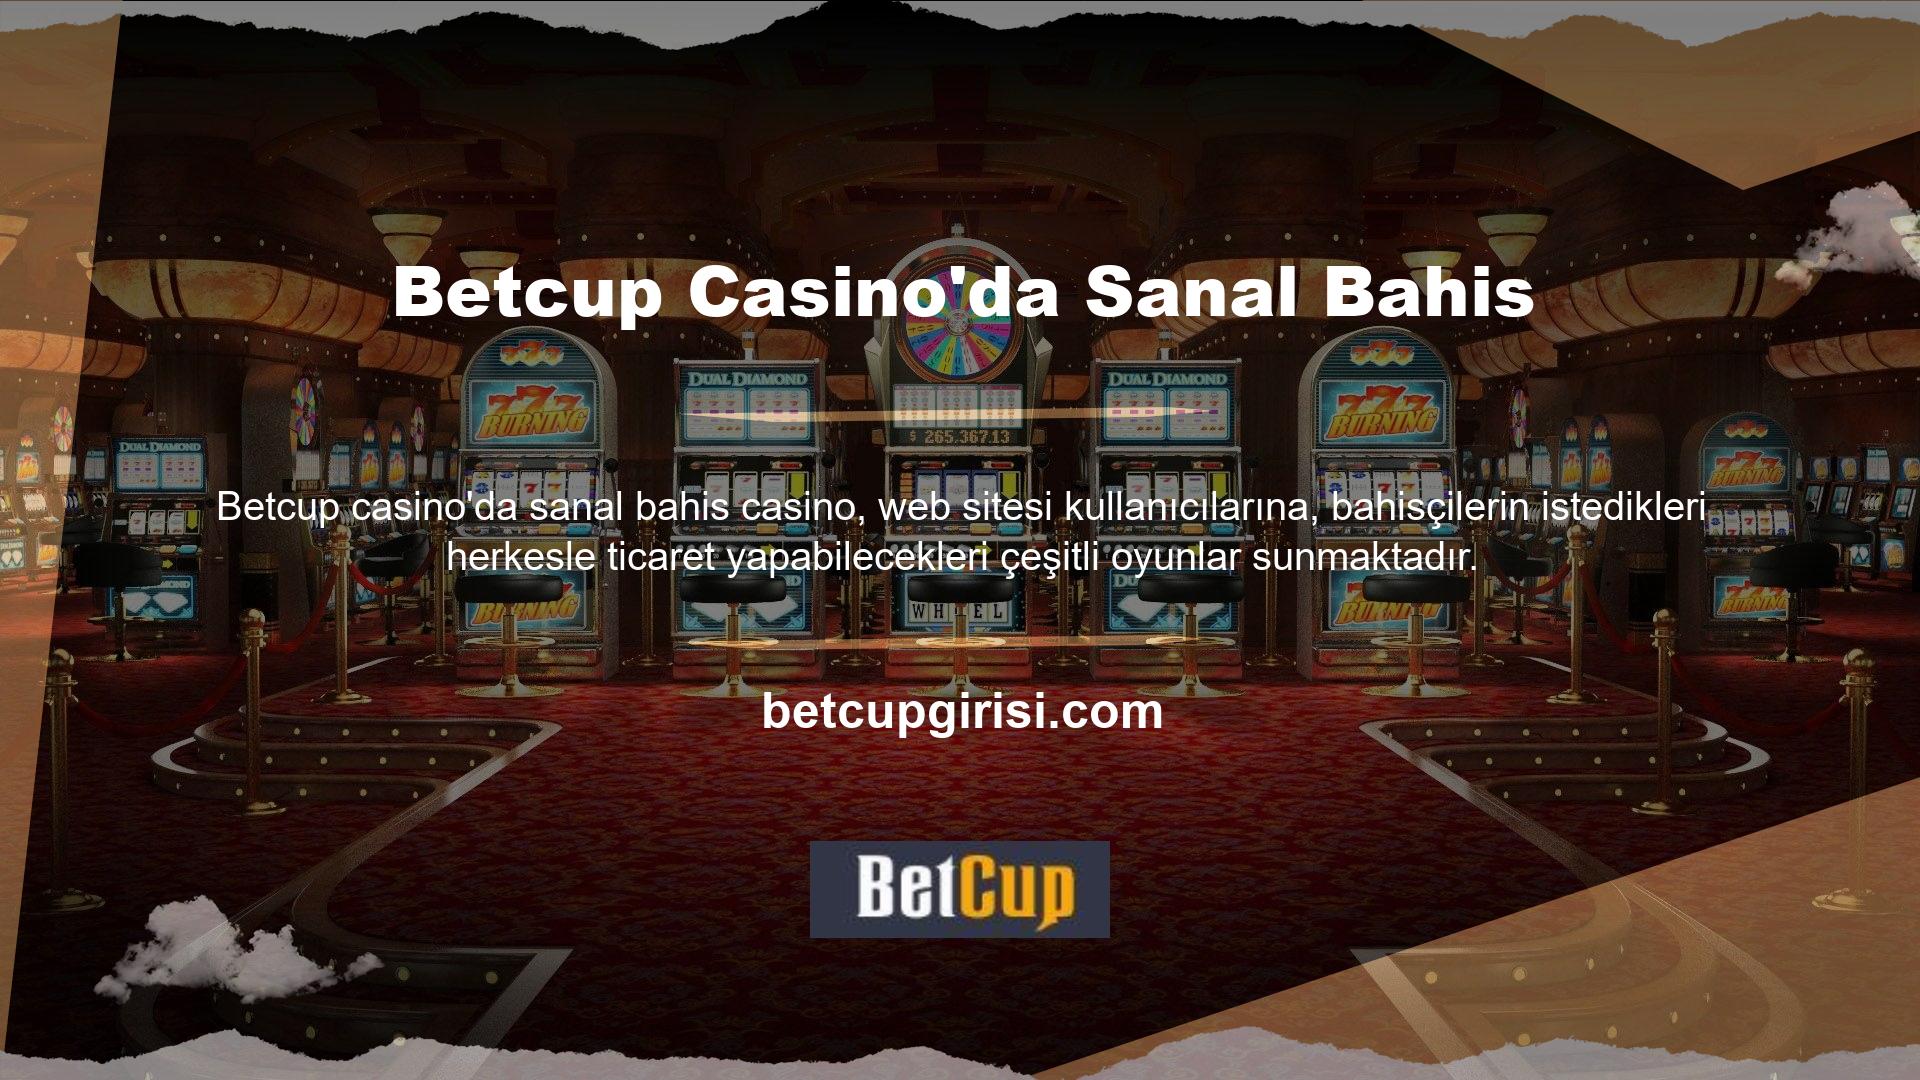 Betcup Casino sanal bahis casino, bahisçilere ayrıntılı bahis kuralları sağlar